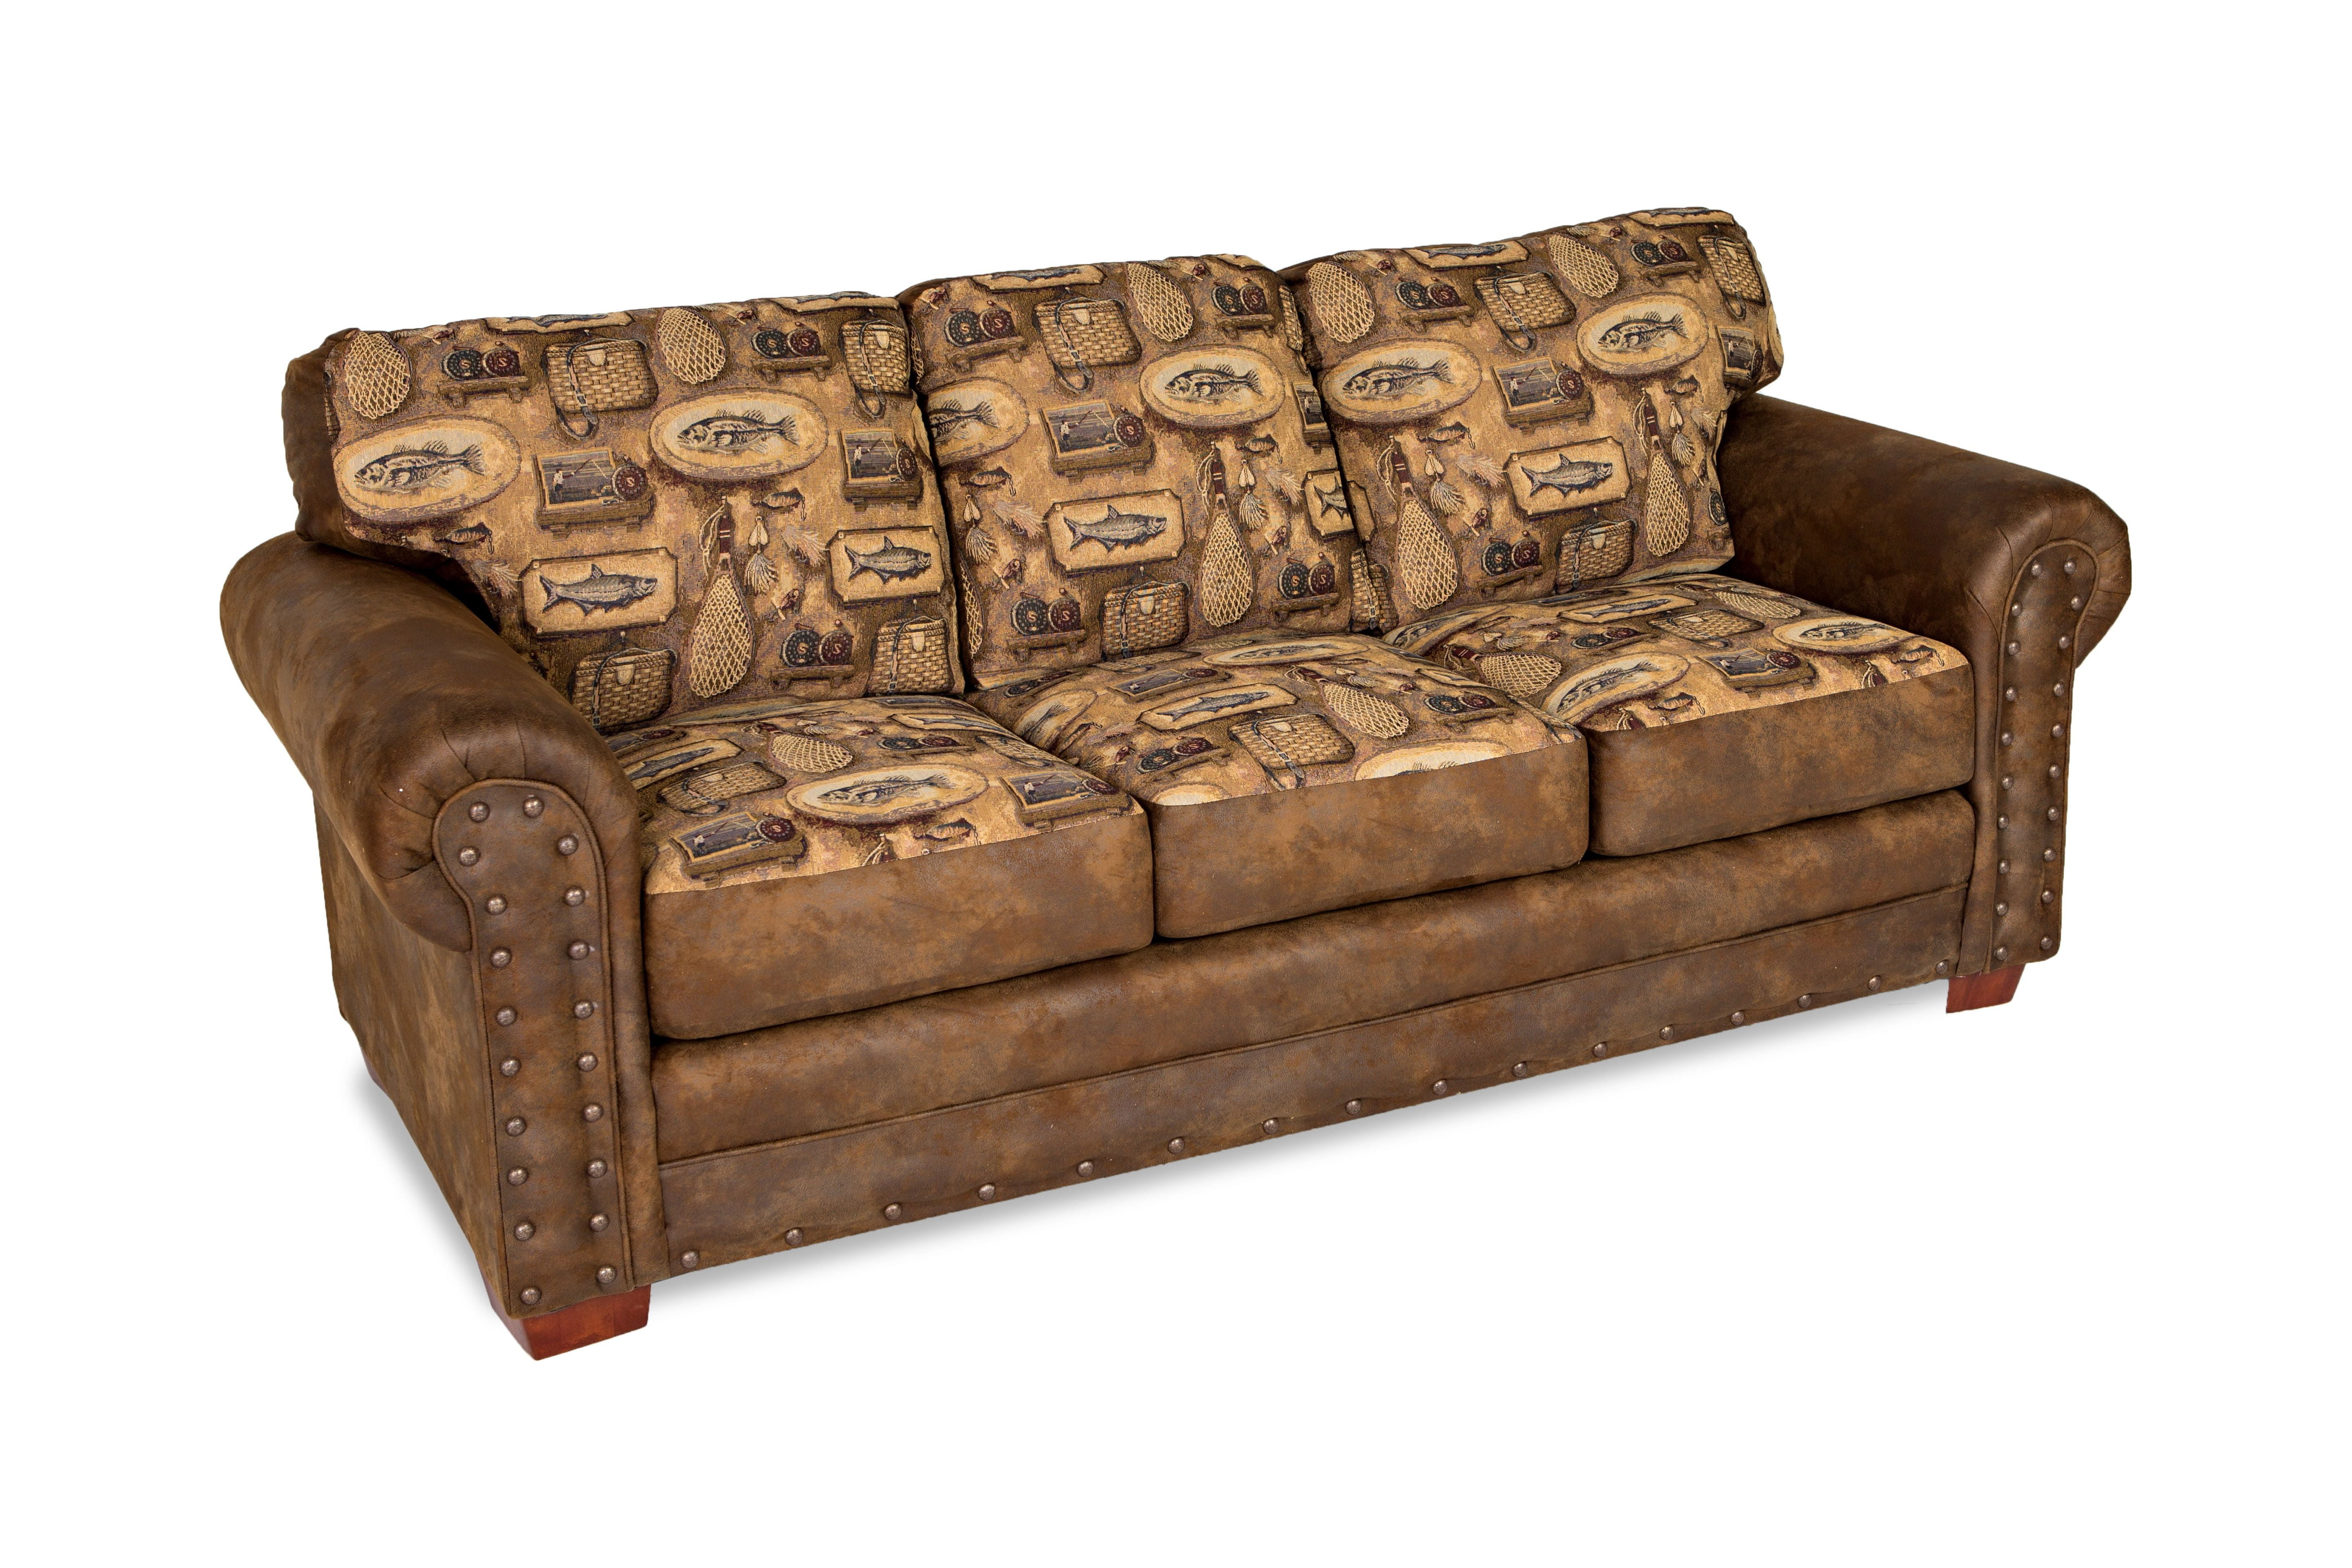 American Furniture Classics 8503-80 18 x 27 x 19 in. River Bend Sofa, Brown